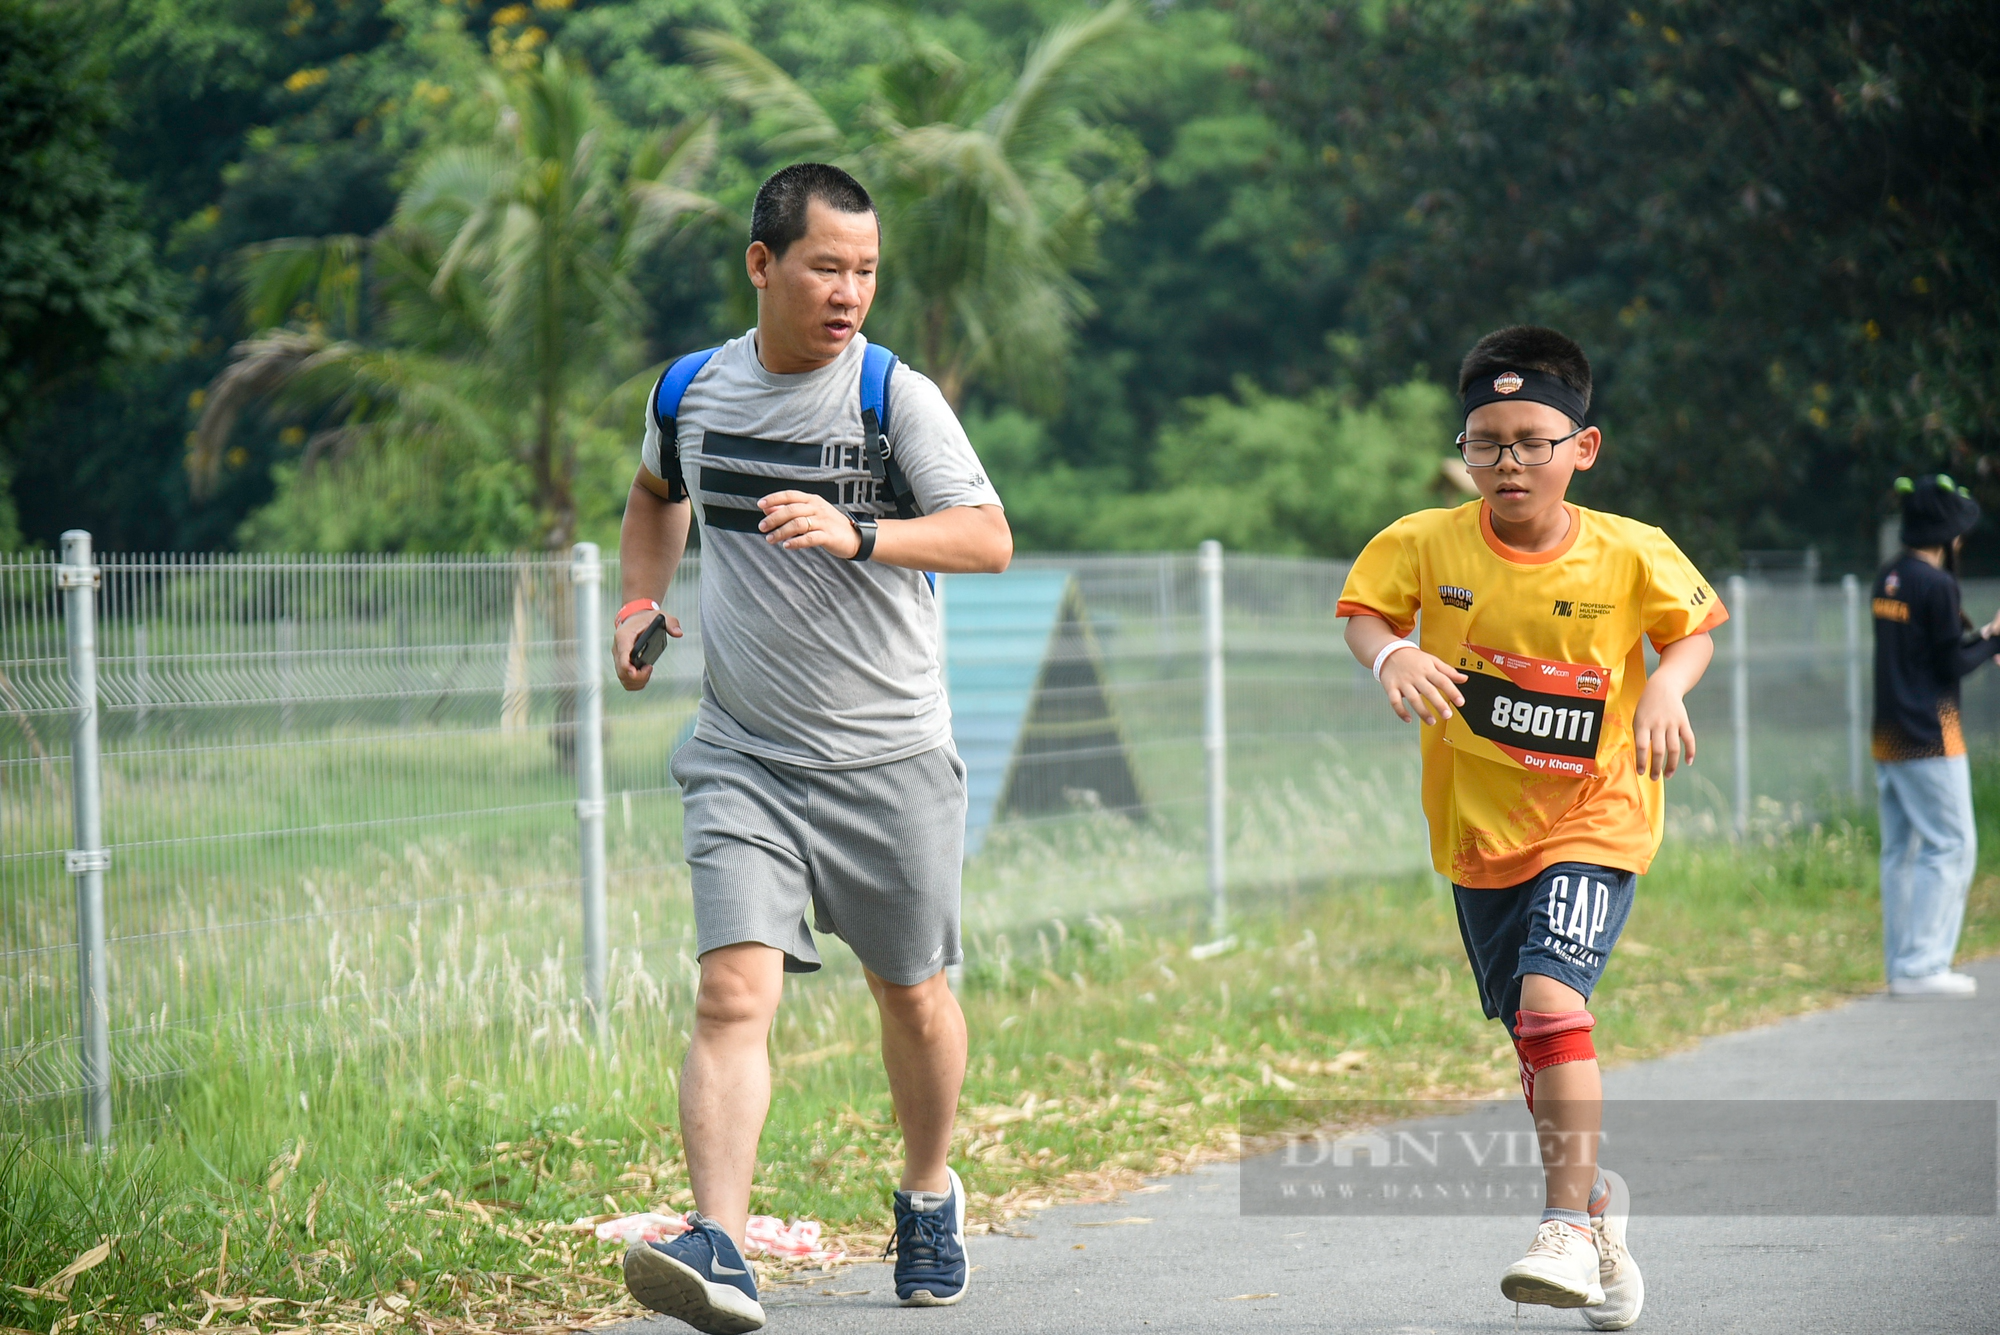 Hơn 1.500 runner nhí tham gia giải đấu vượt chướng ngại vật được tổ chức tại Hà Nội - Ảnh 7.